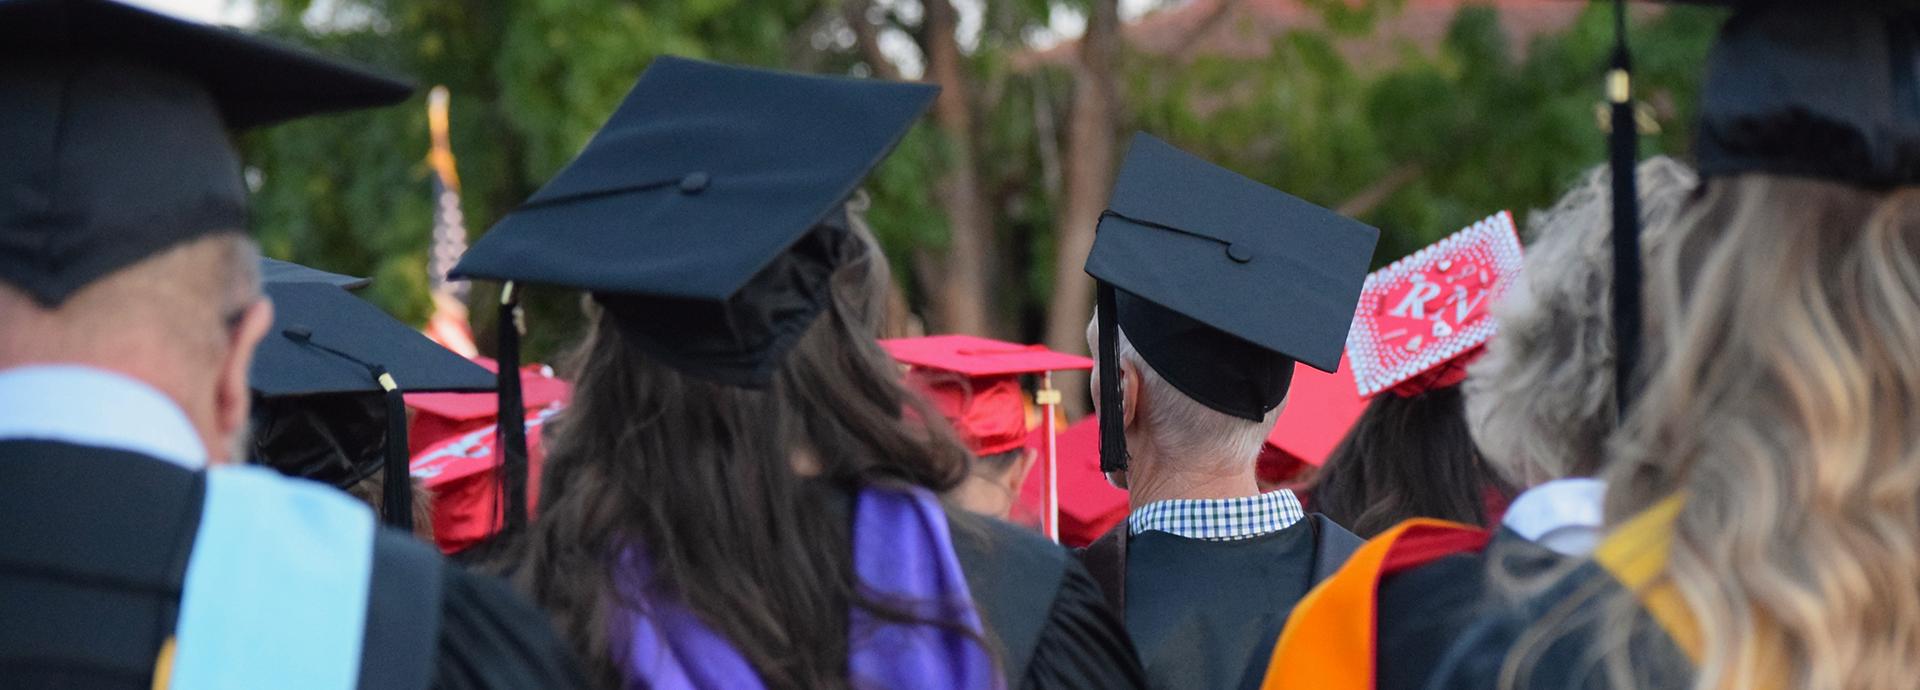 Opiskelijoita graduation-hatut päässä, kuva otettu yleisön takaa.